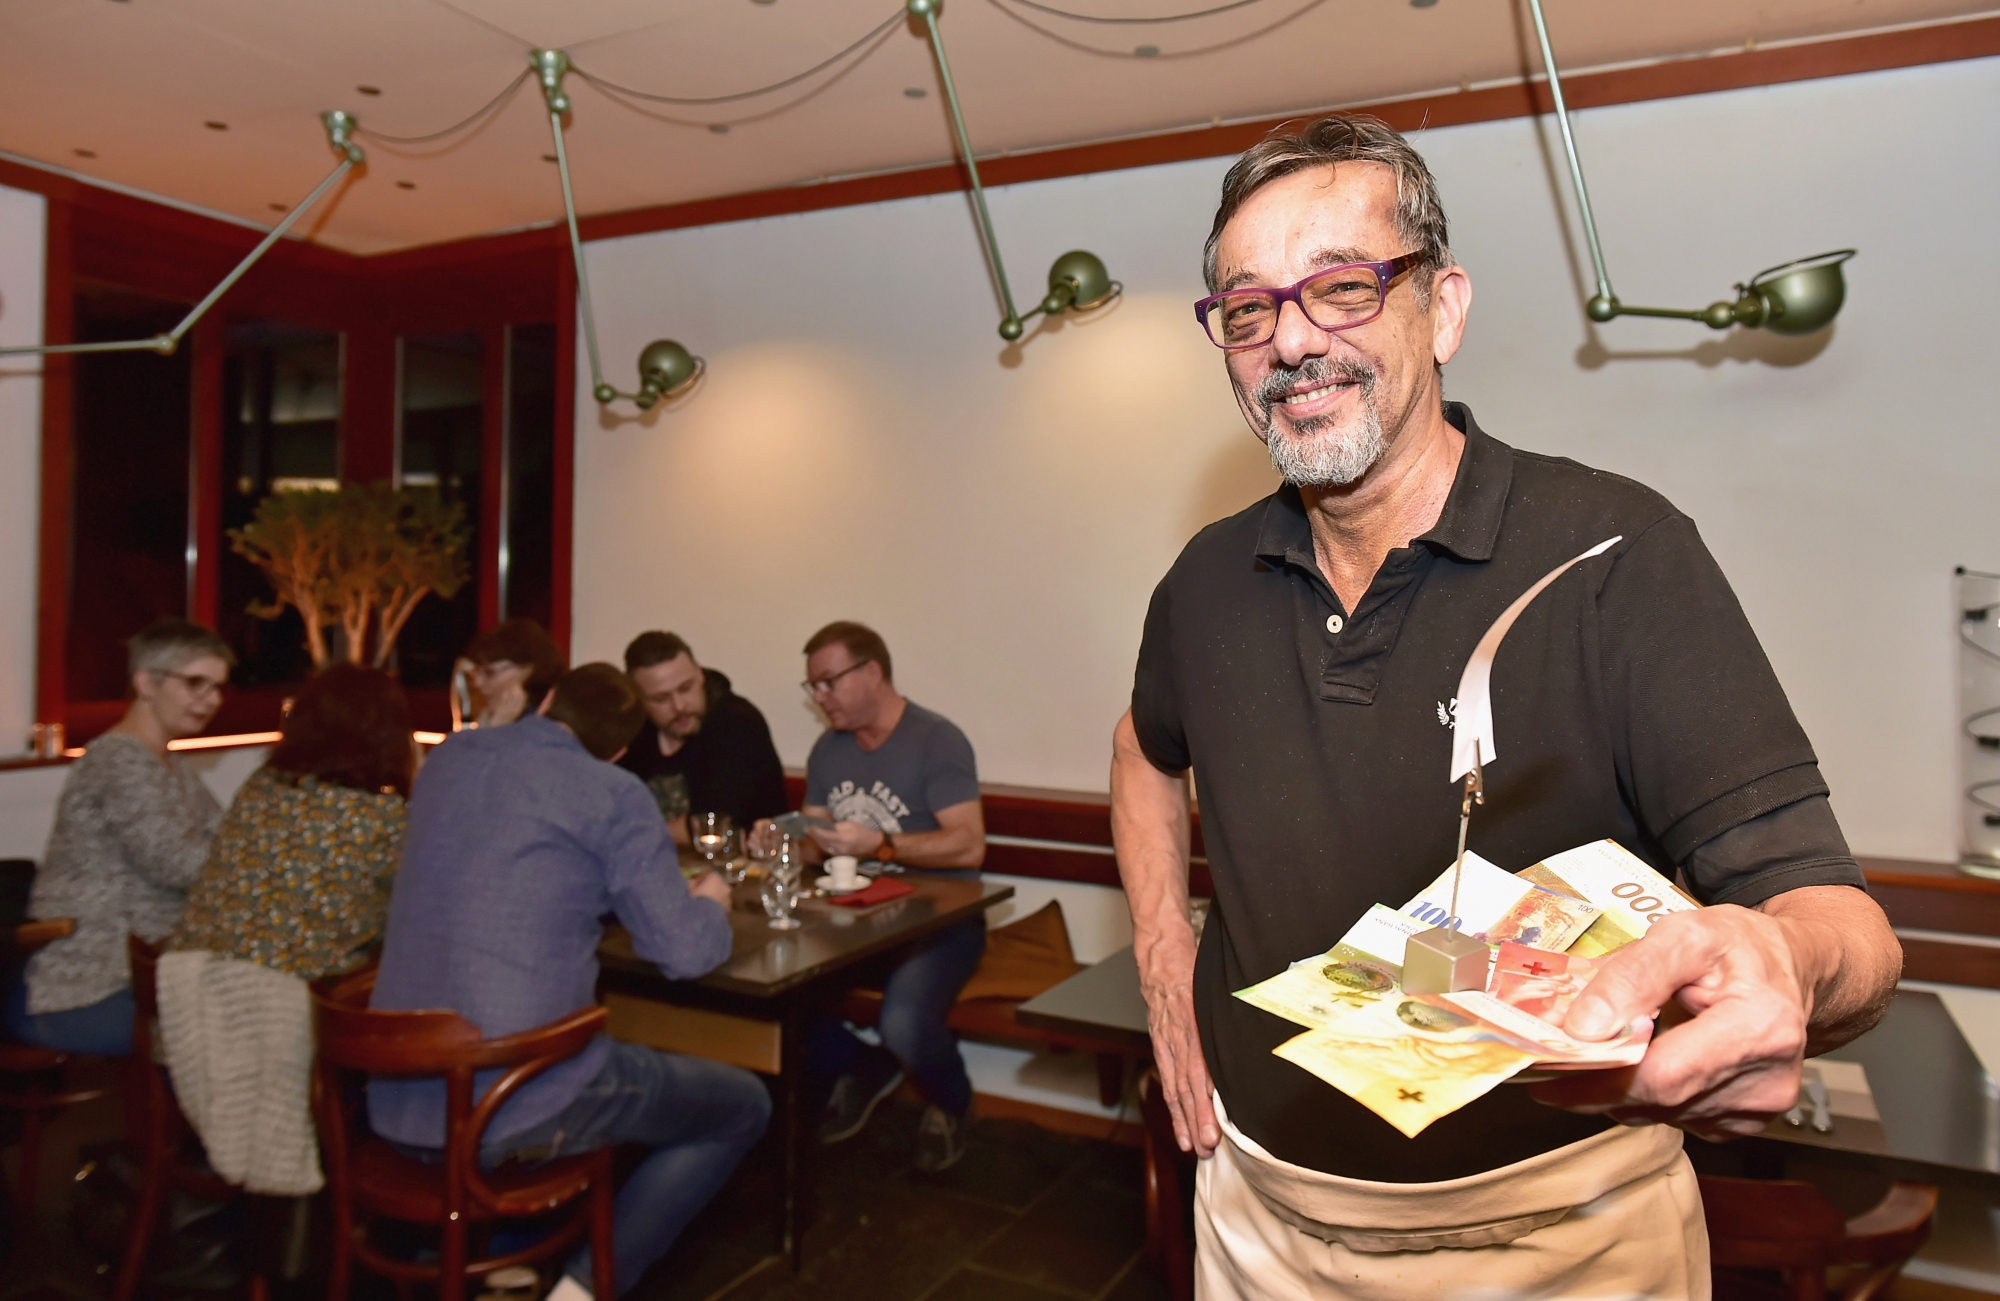 Avec ce concept, Philippe Baud souhaite attirer du monde dans son restaurant dans la période creuse d'après-fêtes.